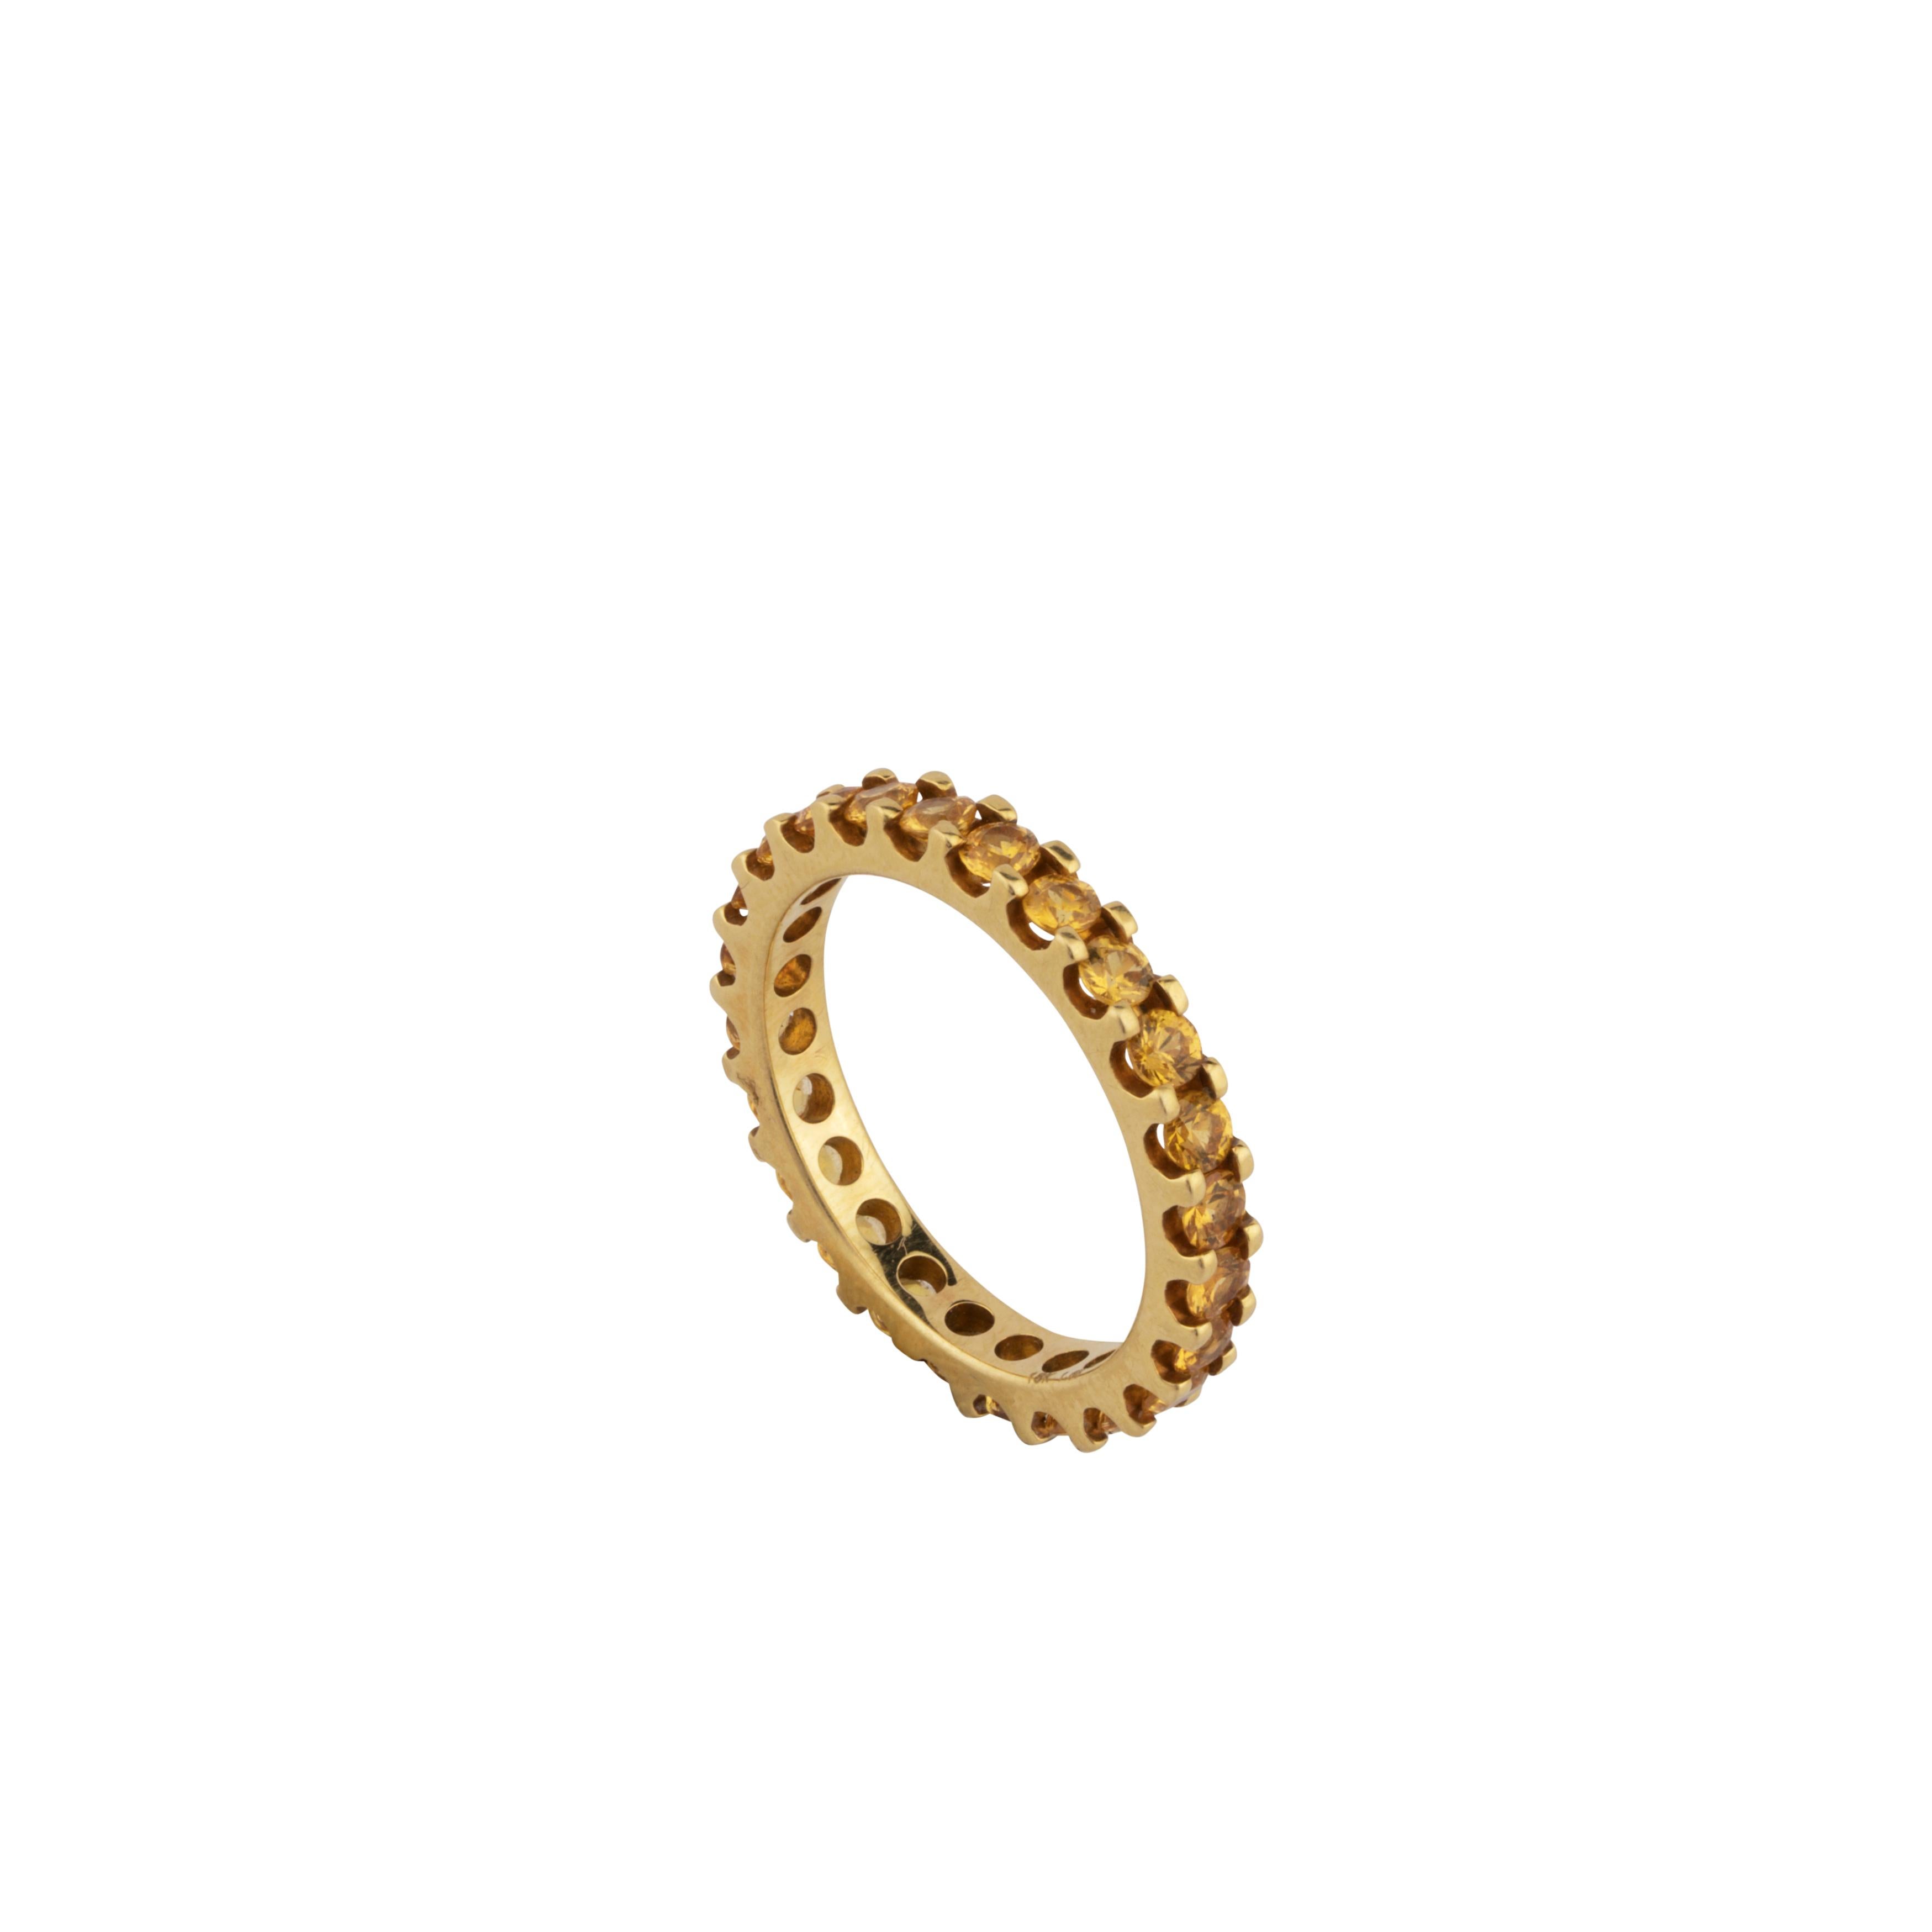 Dies ist ein erstaunlicher Ring mit
gelber Saphir: 1,68 Karat
Gold : 2.96 Gramm


Bitte lesen Sie meine Bewertungen, damit Sie sich wohlfühlen.
Ich möchte nicht nur einmal etwas verkaufen, sondern Kunden fürs Leben gewinnen.
Alle unsere